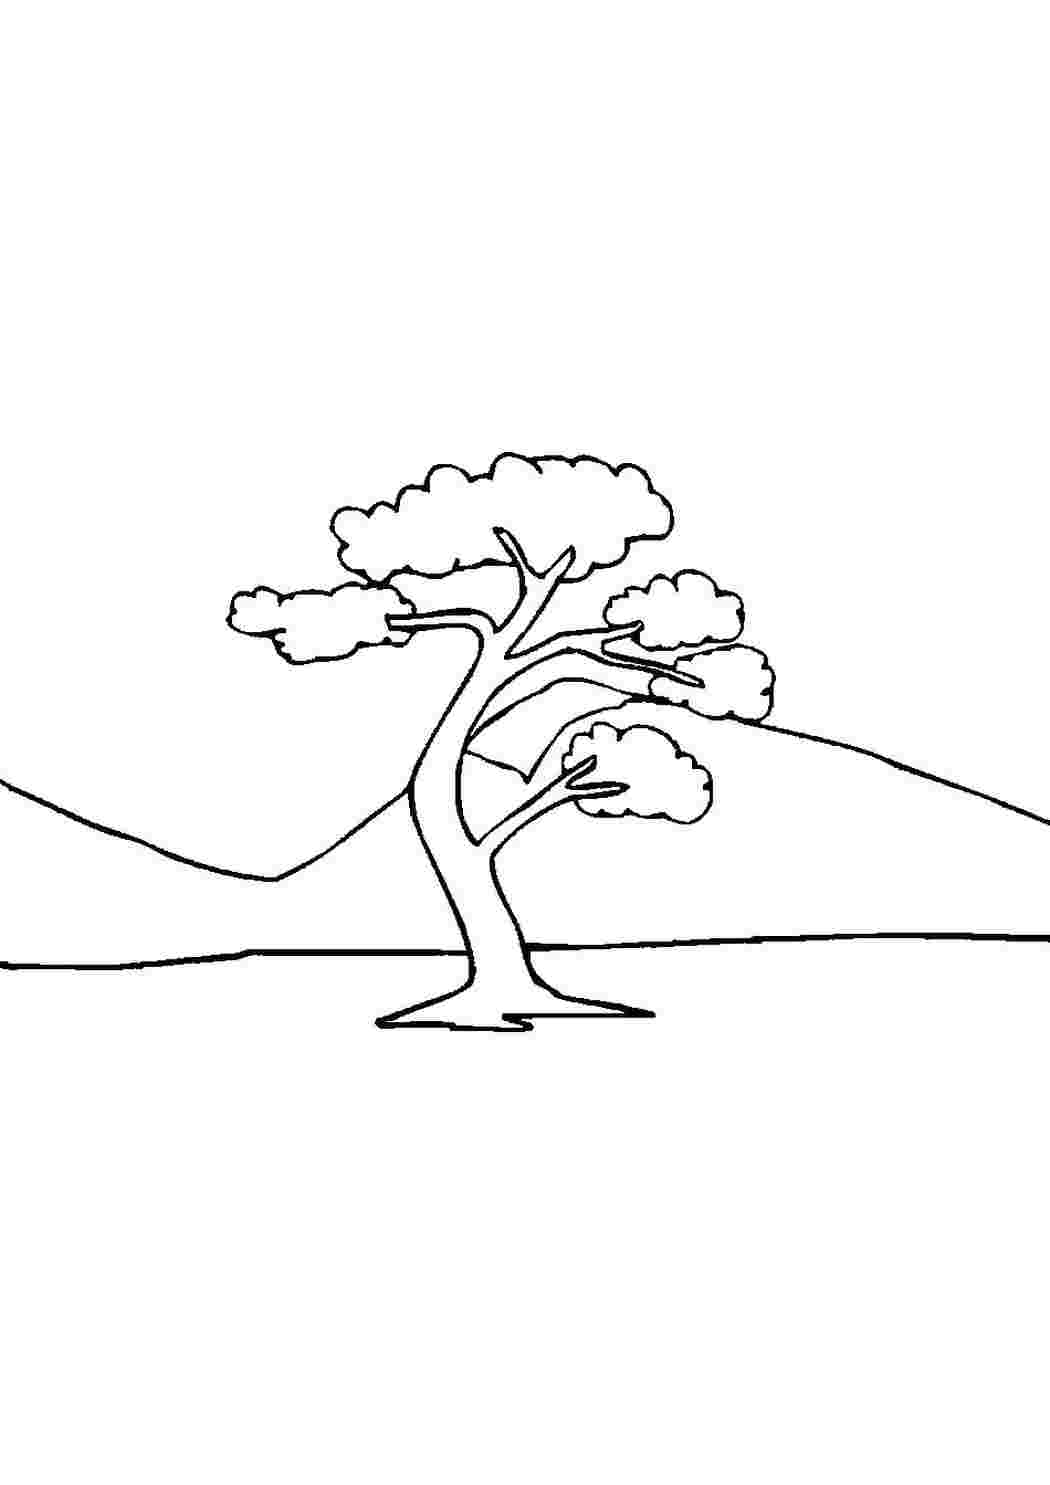 Раскраски Одинокое дерево на фоне гор  растения дерево